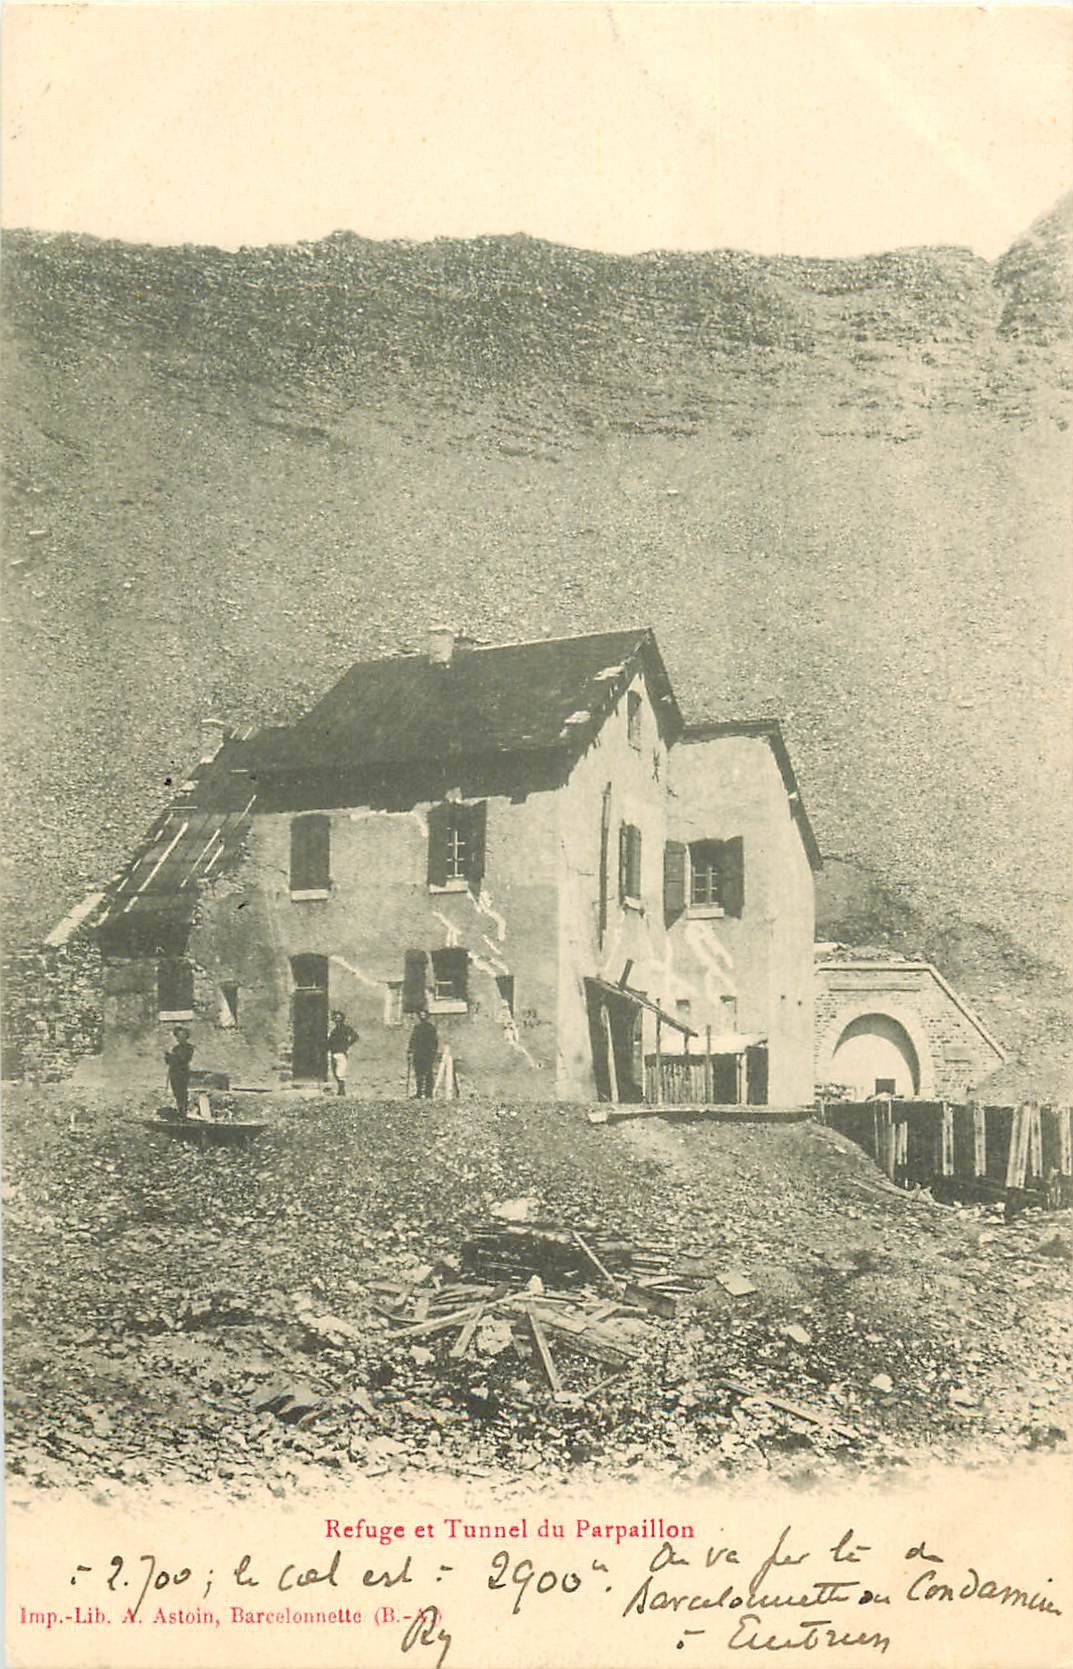 WW 04 Chasseurs Alpins Refuge et Tunnel Parpaillon 1903